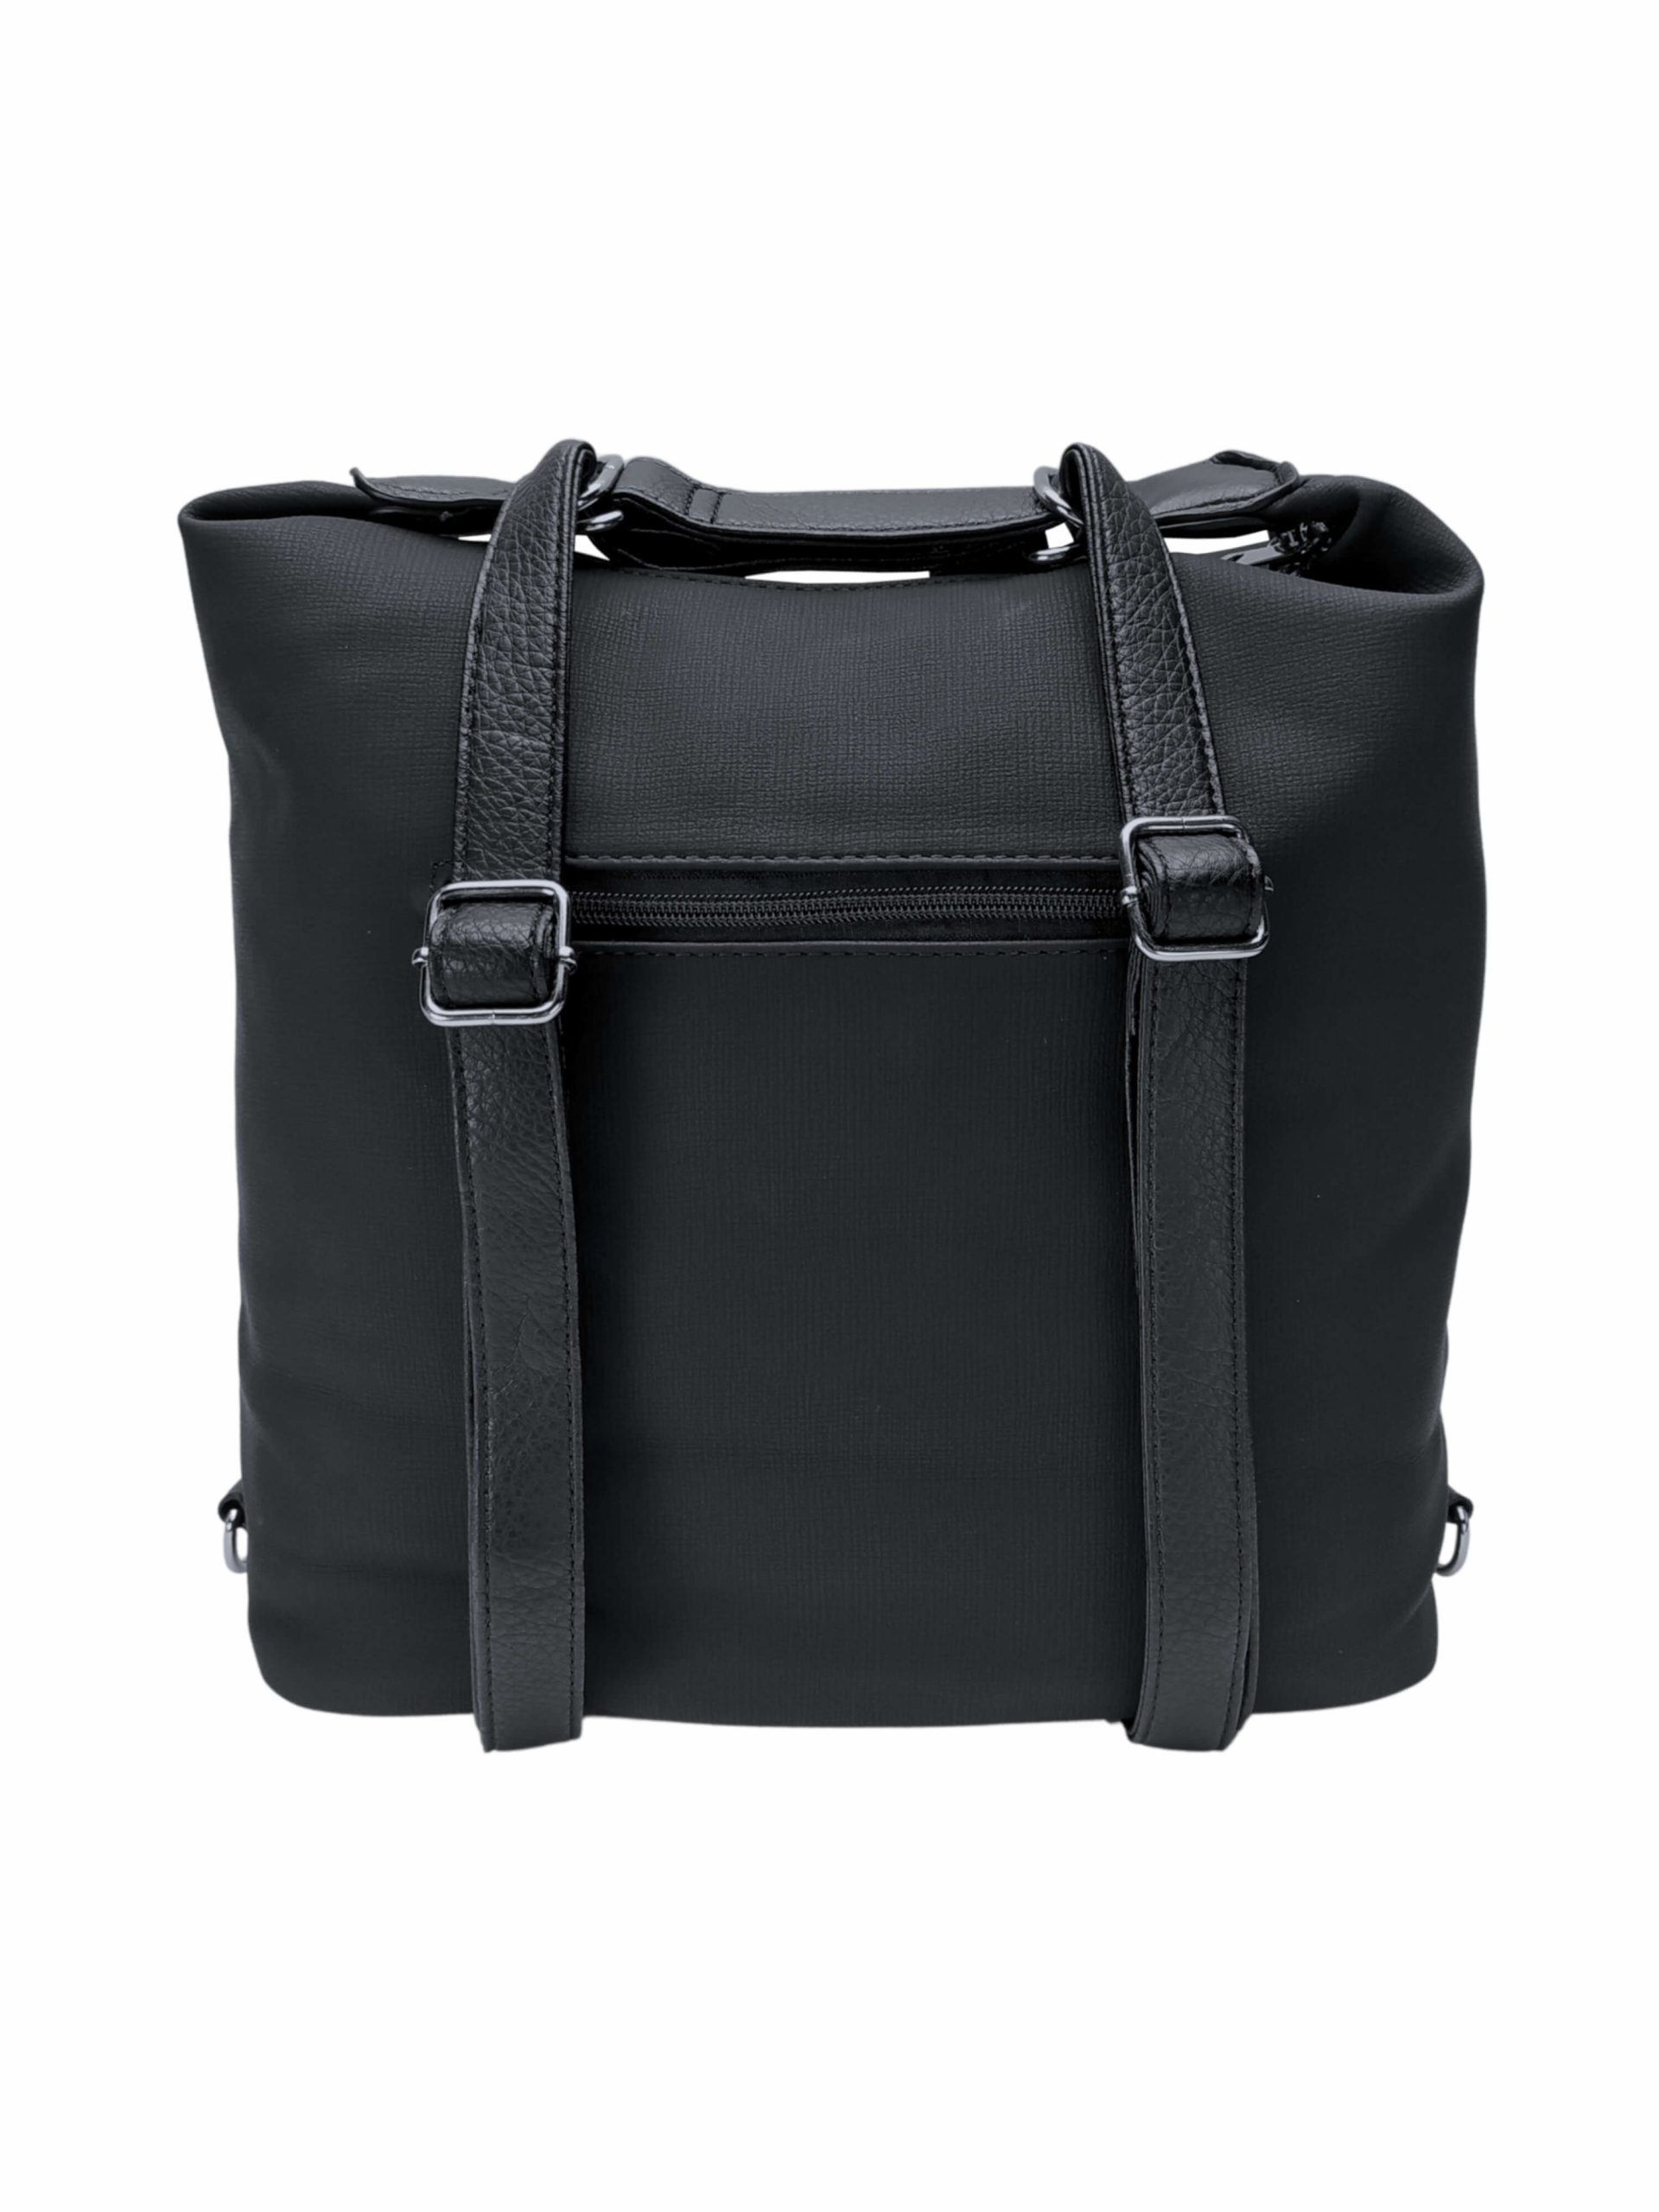 Velký černý kabelko-batoh s šikmou kapsou, Tapple, H18077N, zadní strana kabelko-batohu 2v1 s popruhy